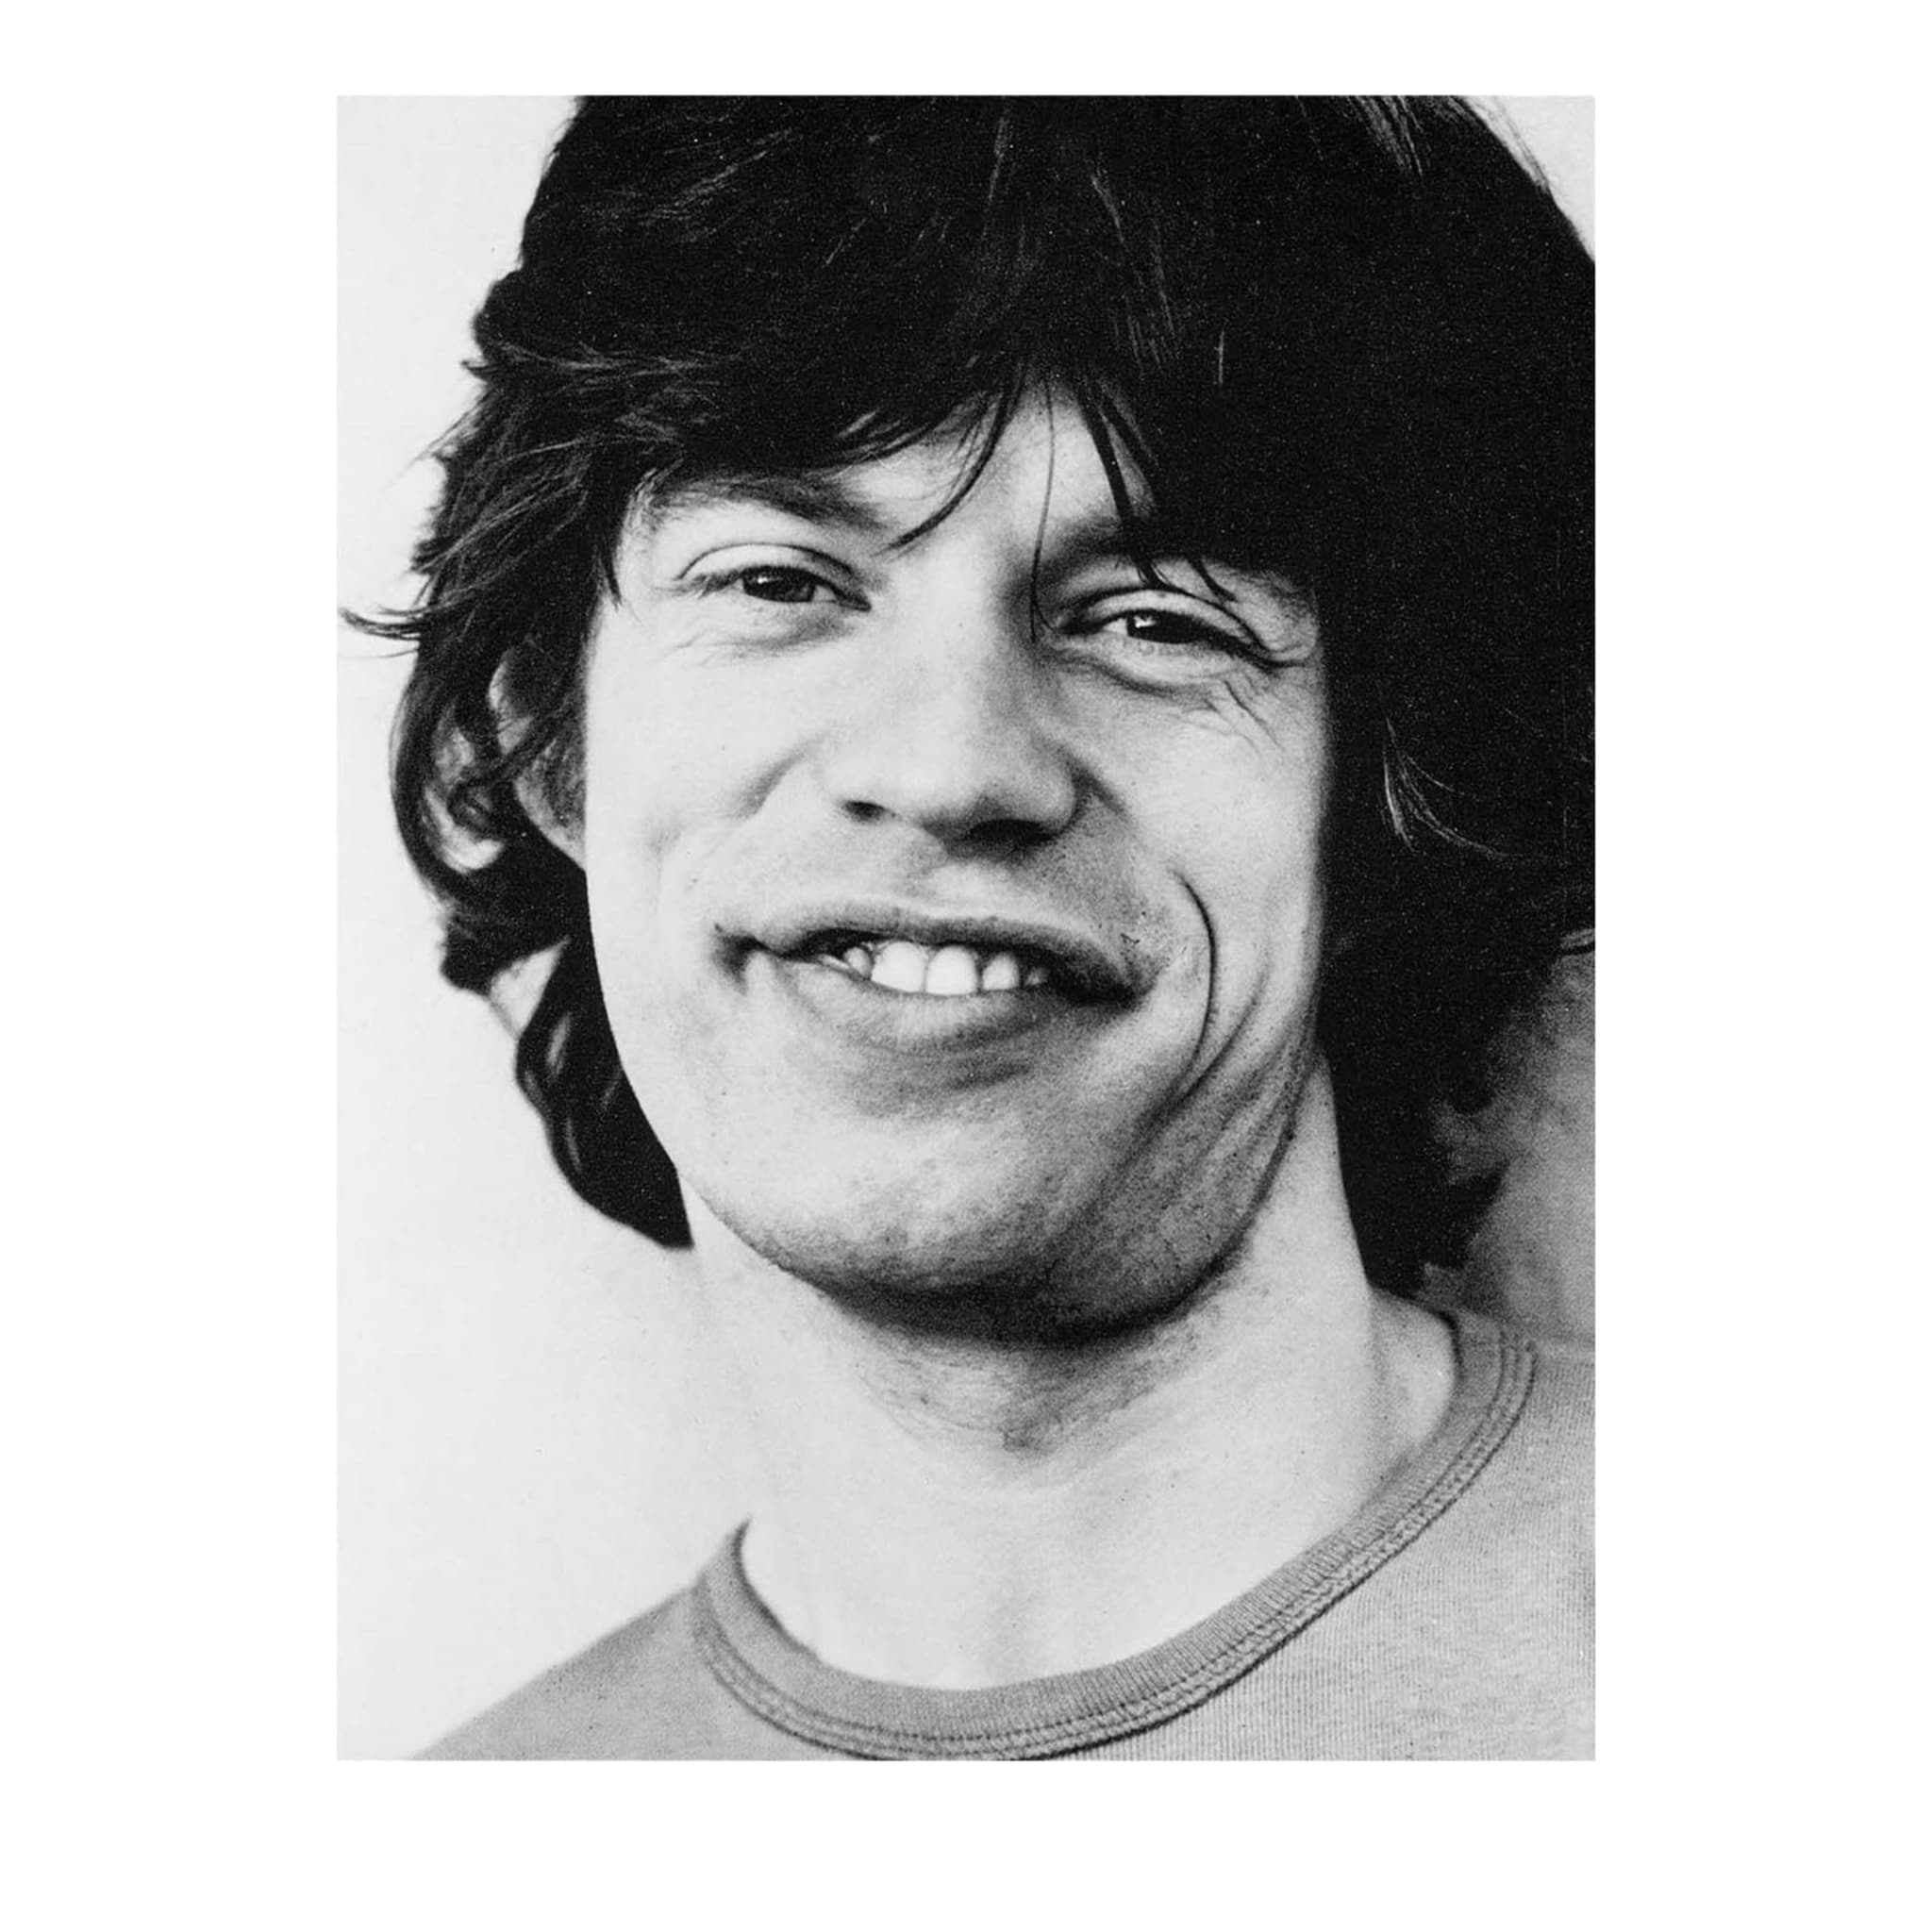 Mick Jagger 1973 Photograph - Main view